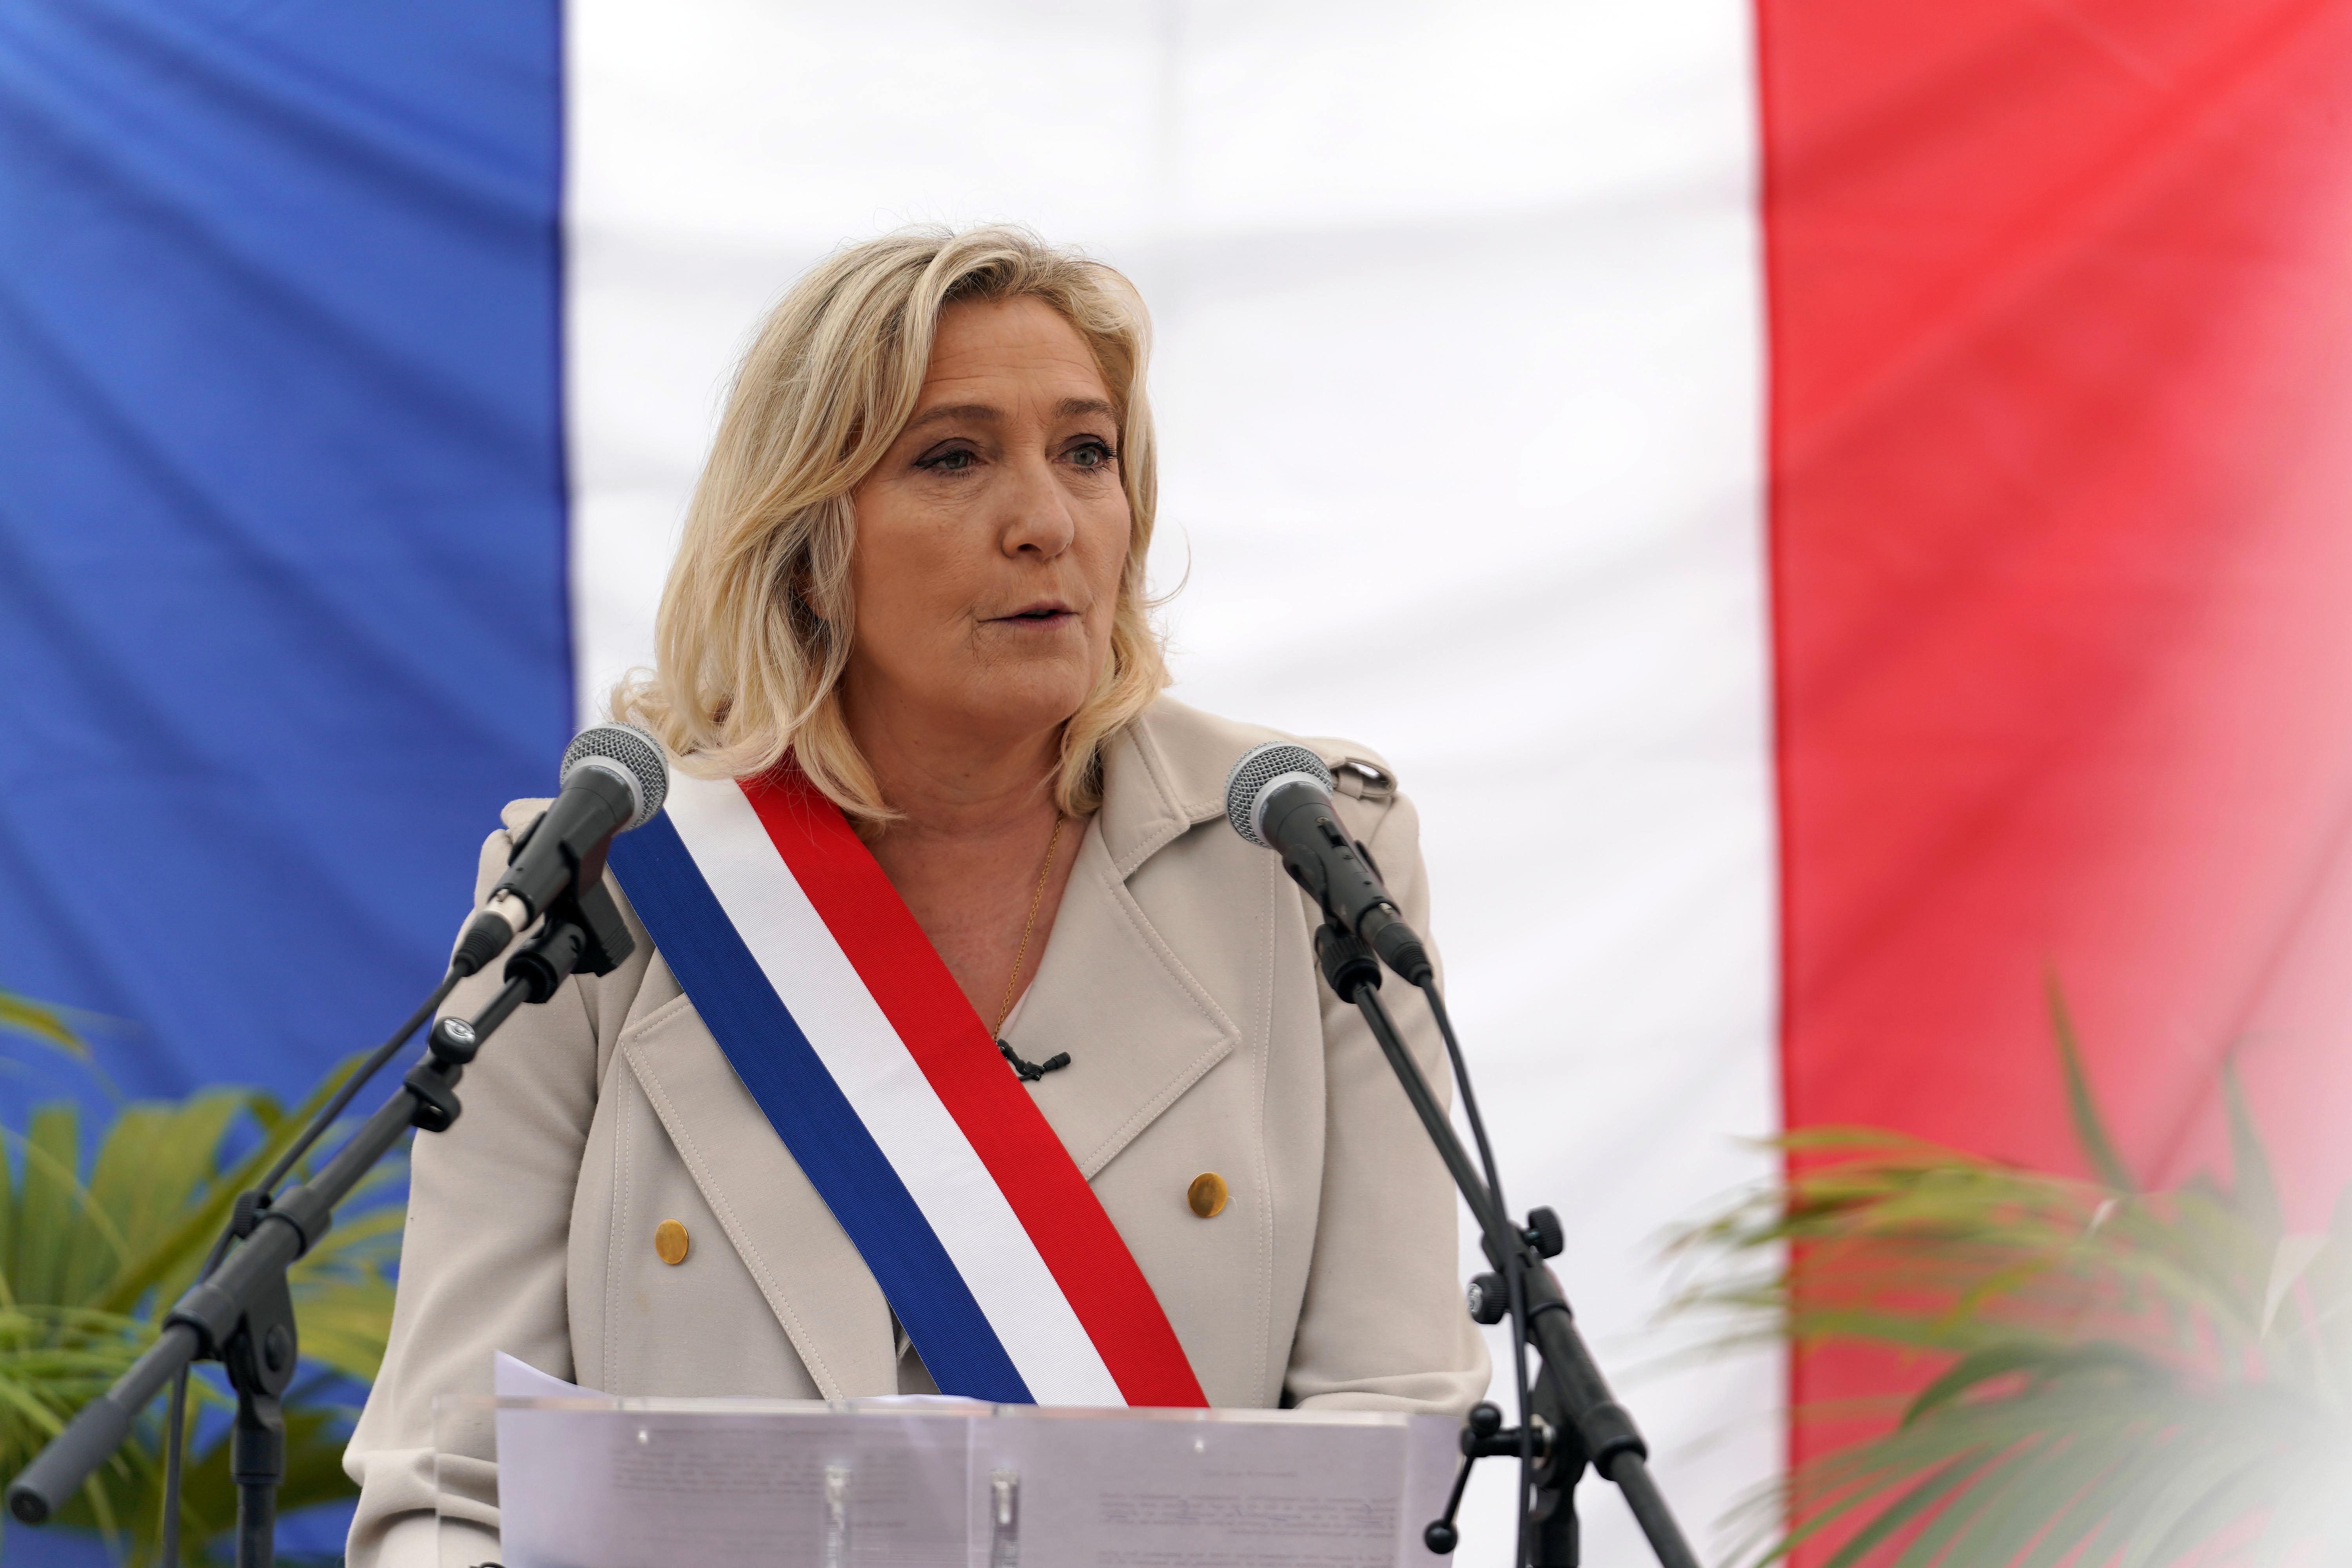 Will Marine Le Pen's rebrand help her win? - GZERO Media